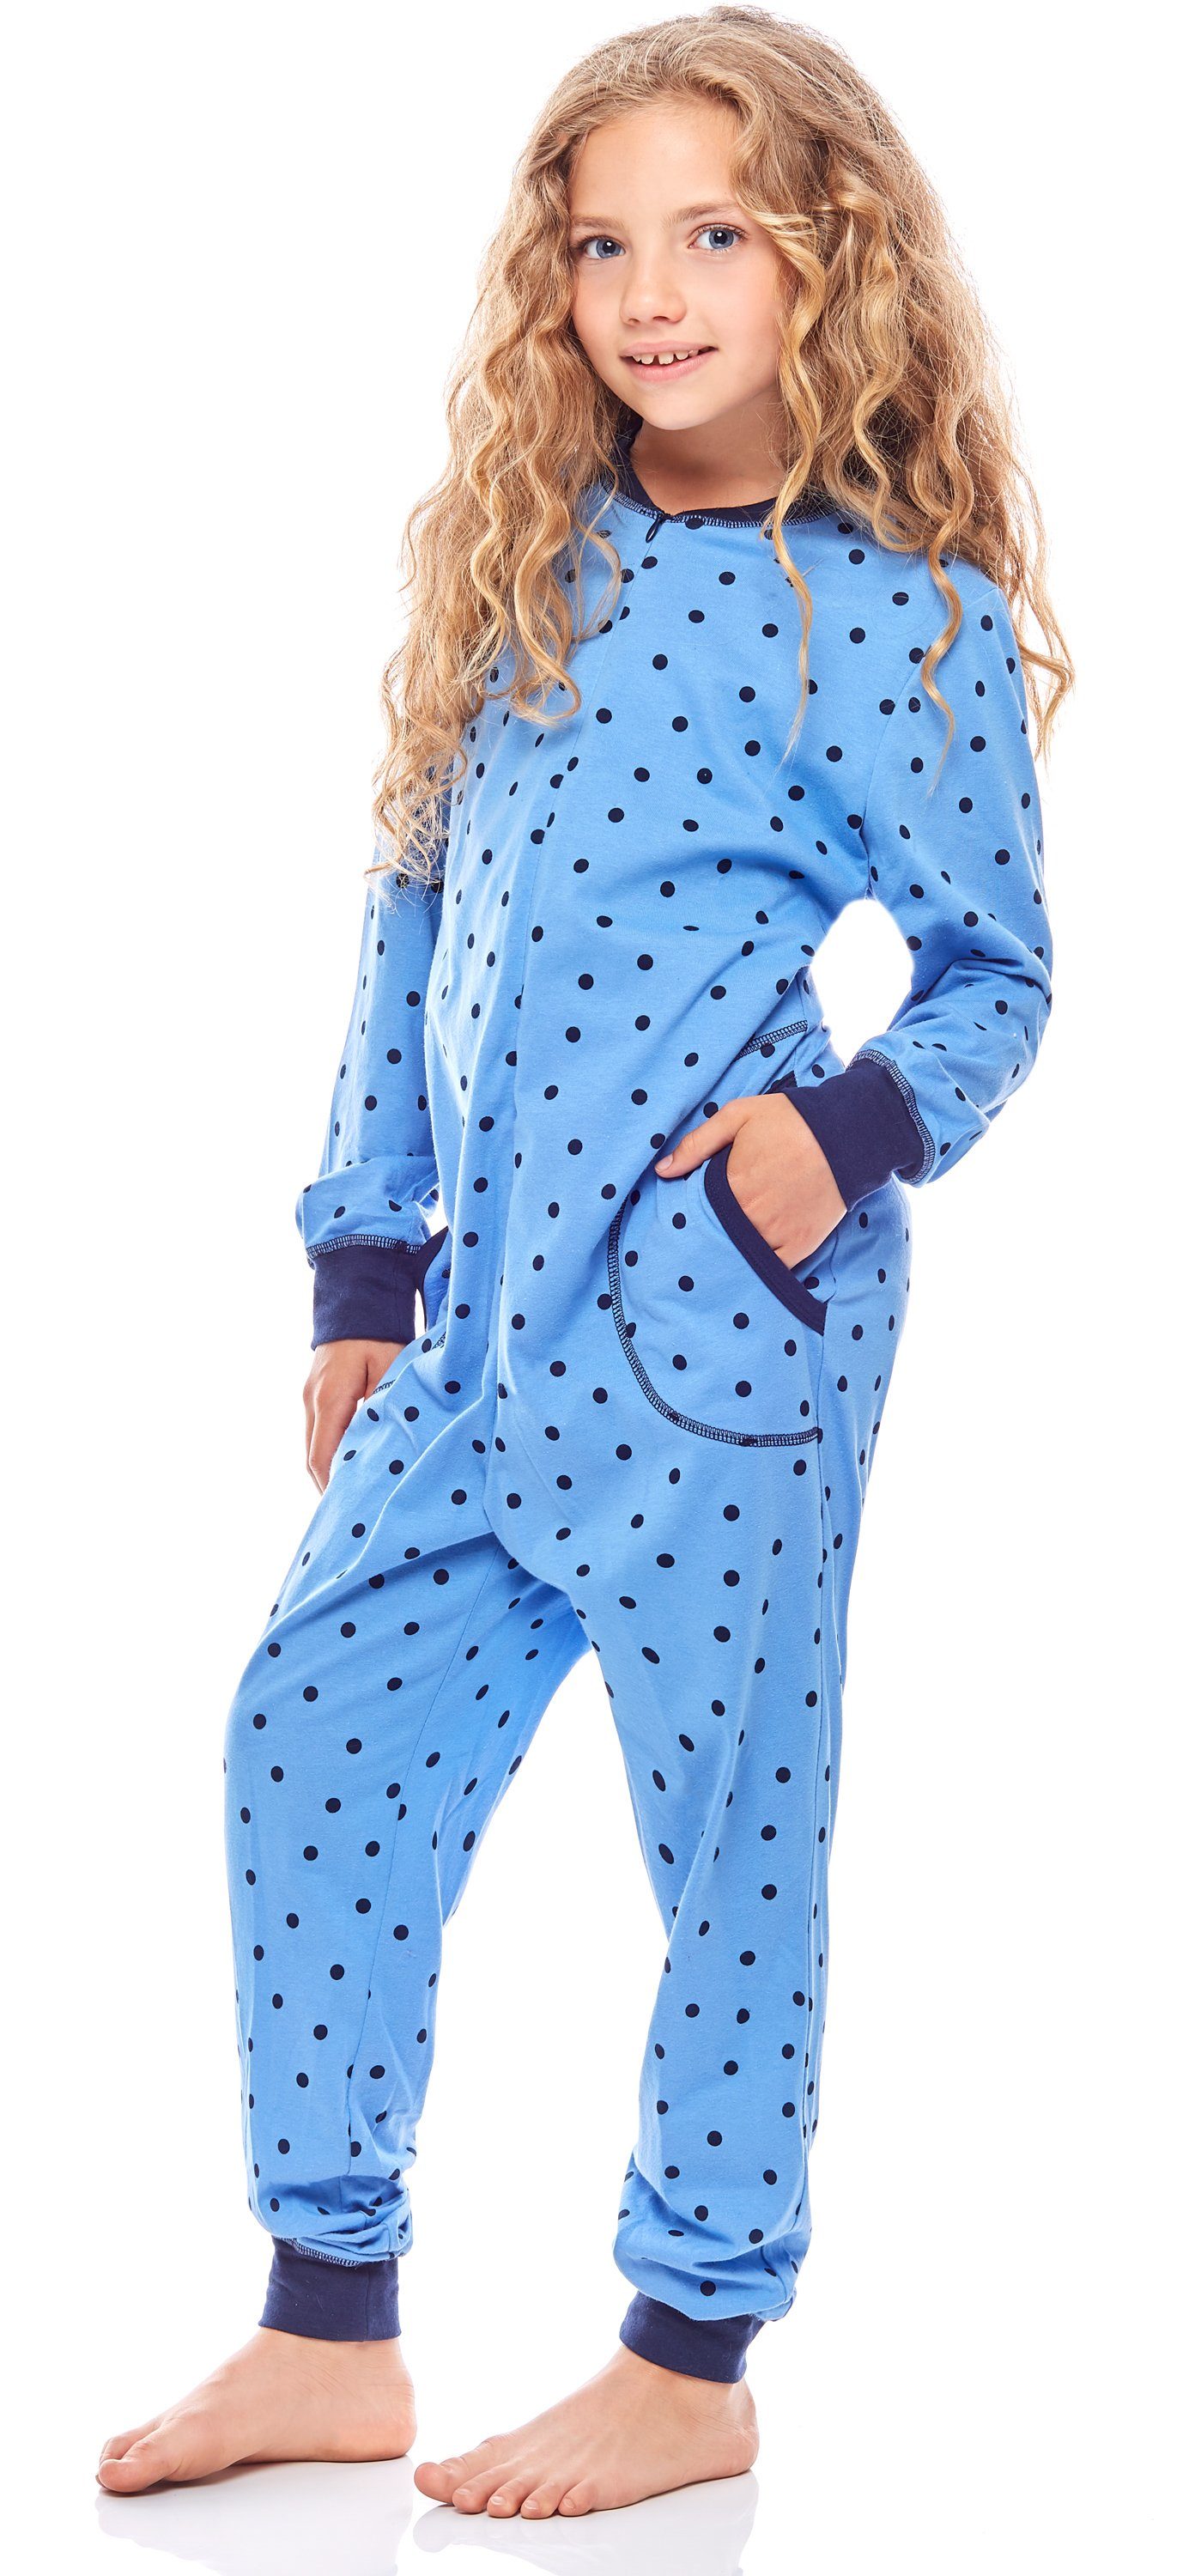 Marine Punkte Schlafanzug Mädchen Merry Schlafanzug Jumpsuit MS10-186 Blaue Style